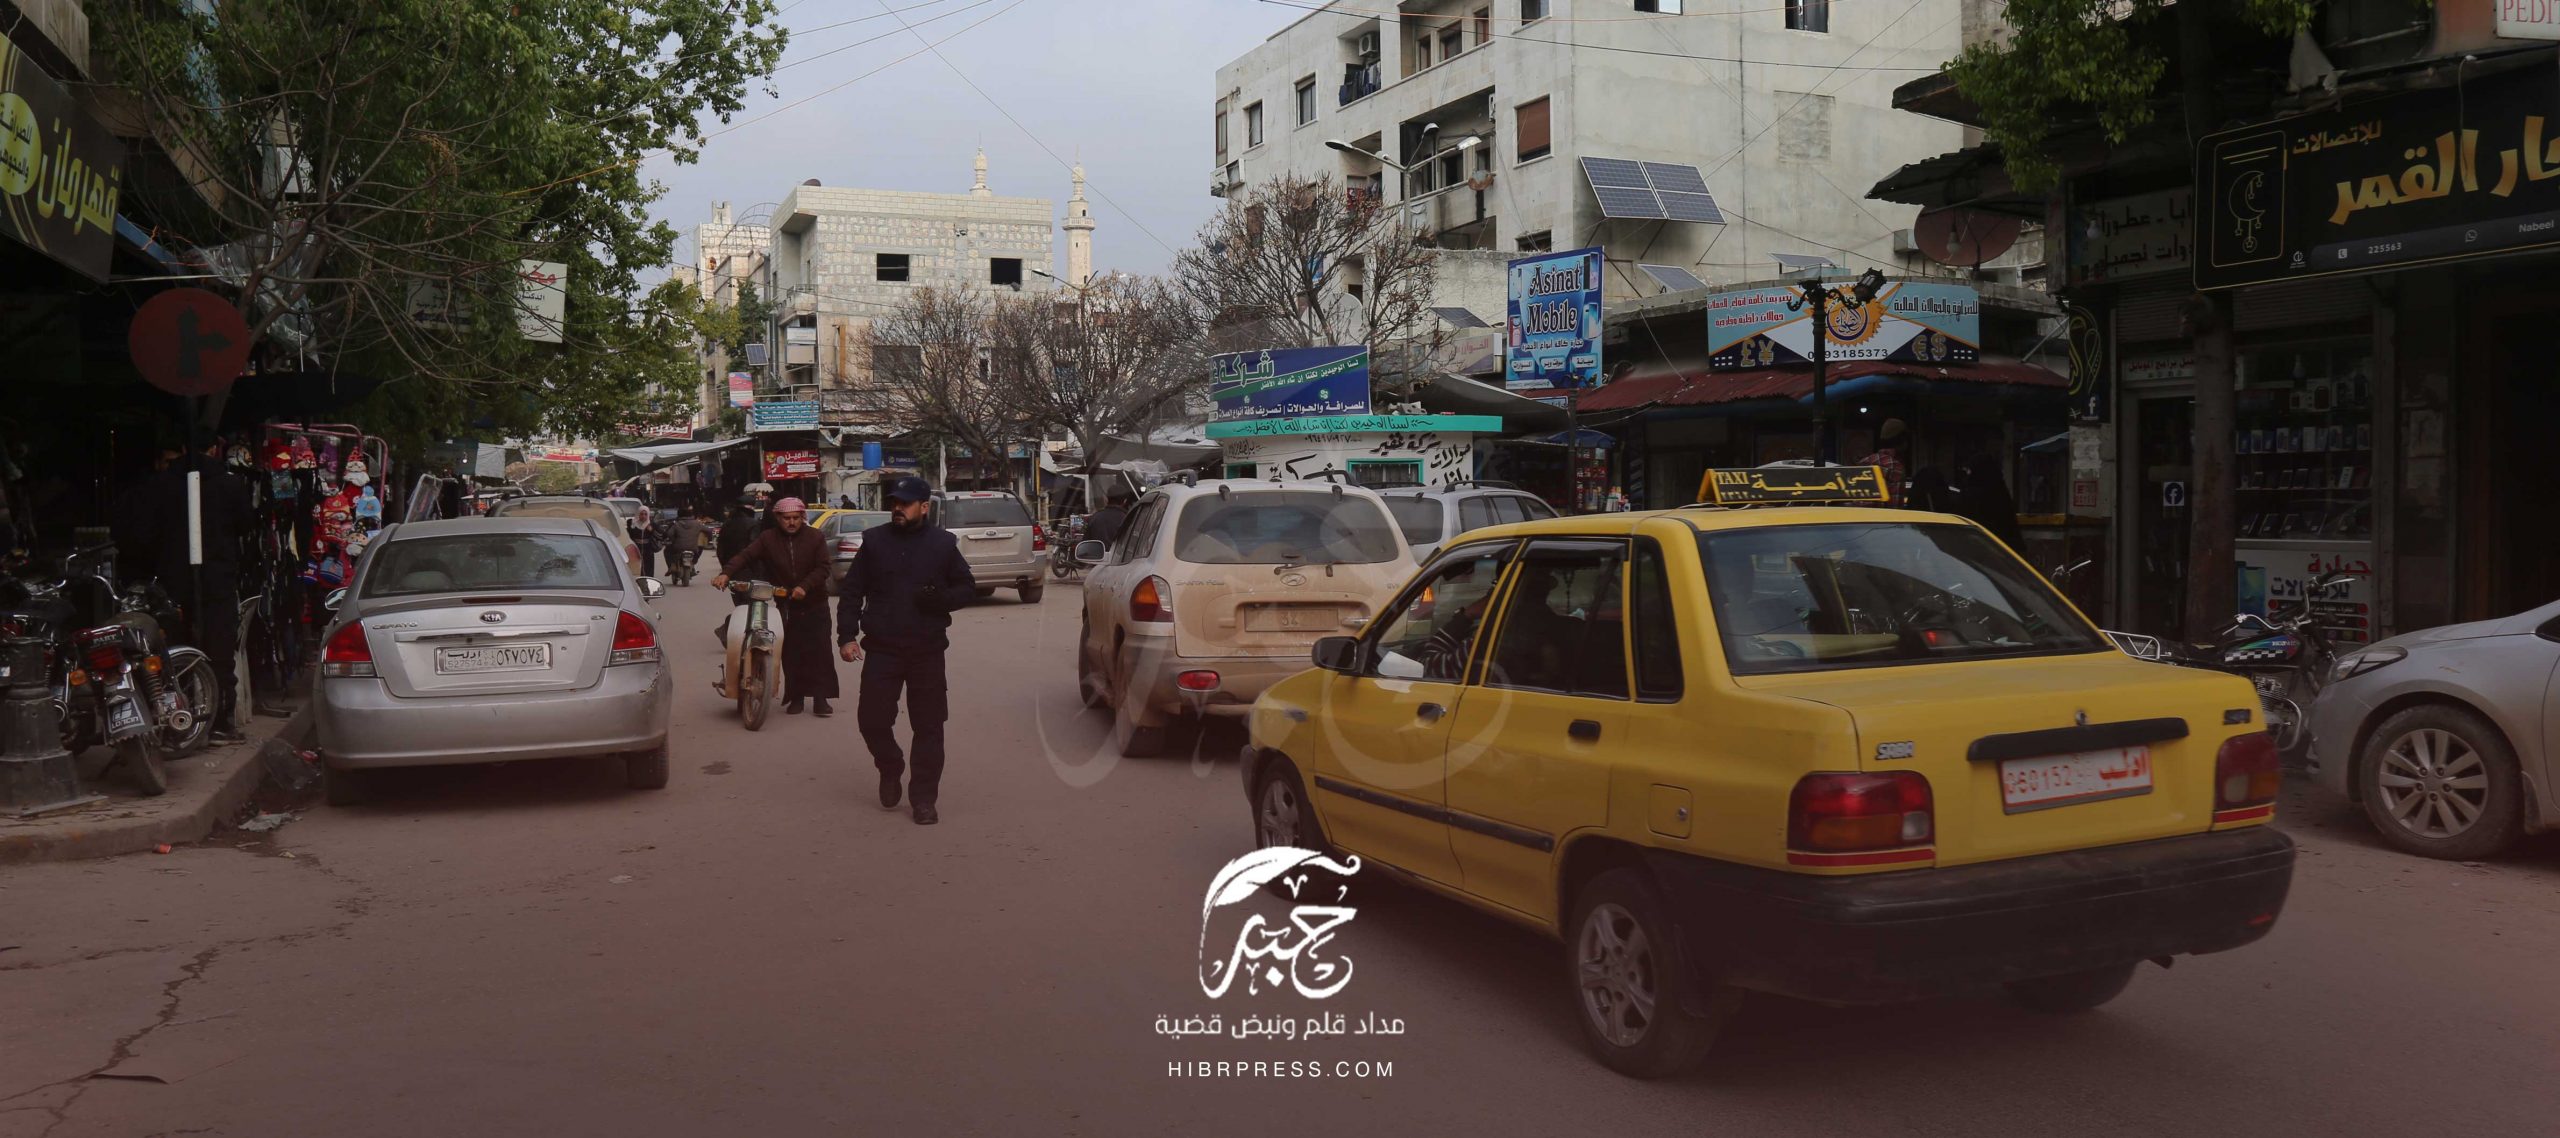 حكومة الإنقاذ السورية لائحة تعليمات جديدة تخص محلات بيع الأسلحة في مناطق سيطرتها، متوعدةً بحملة شديدة لمن لا يلتزم بها.